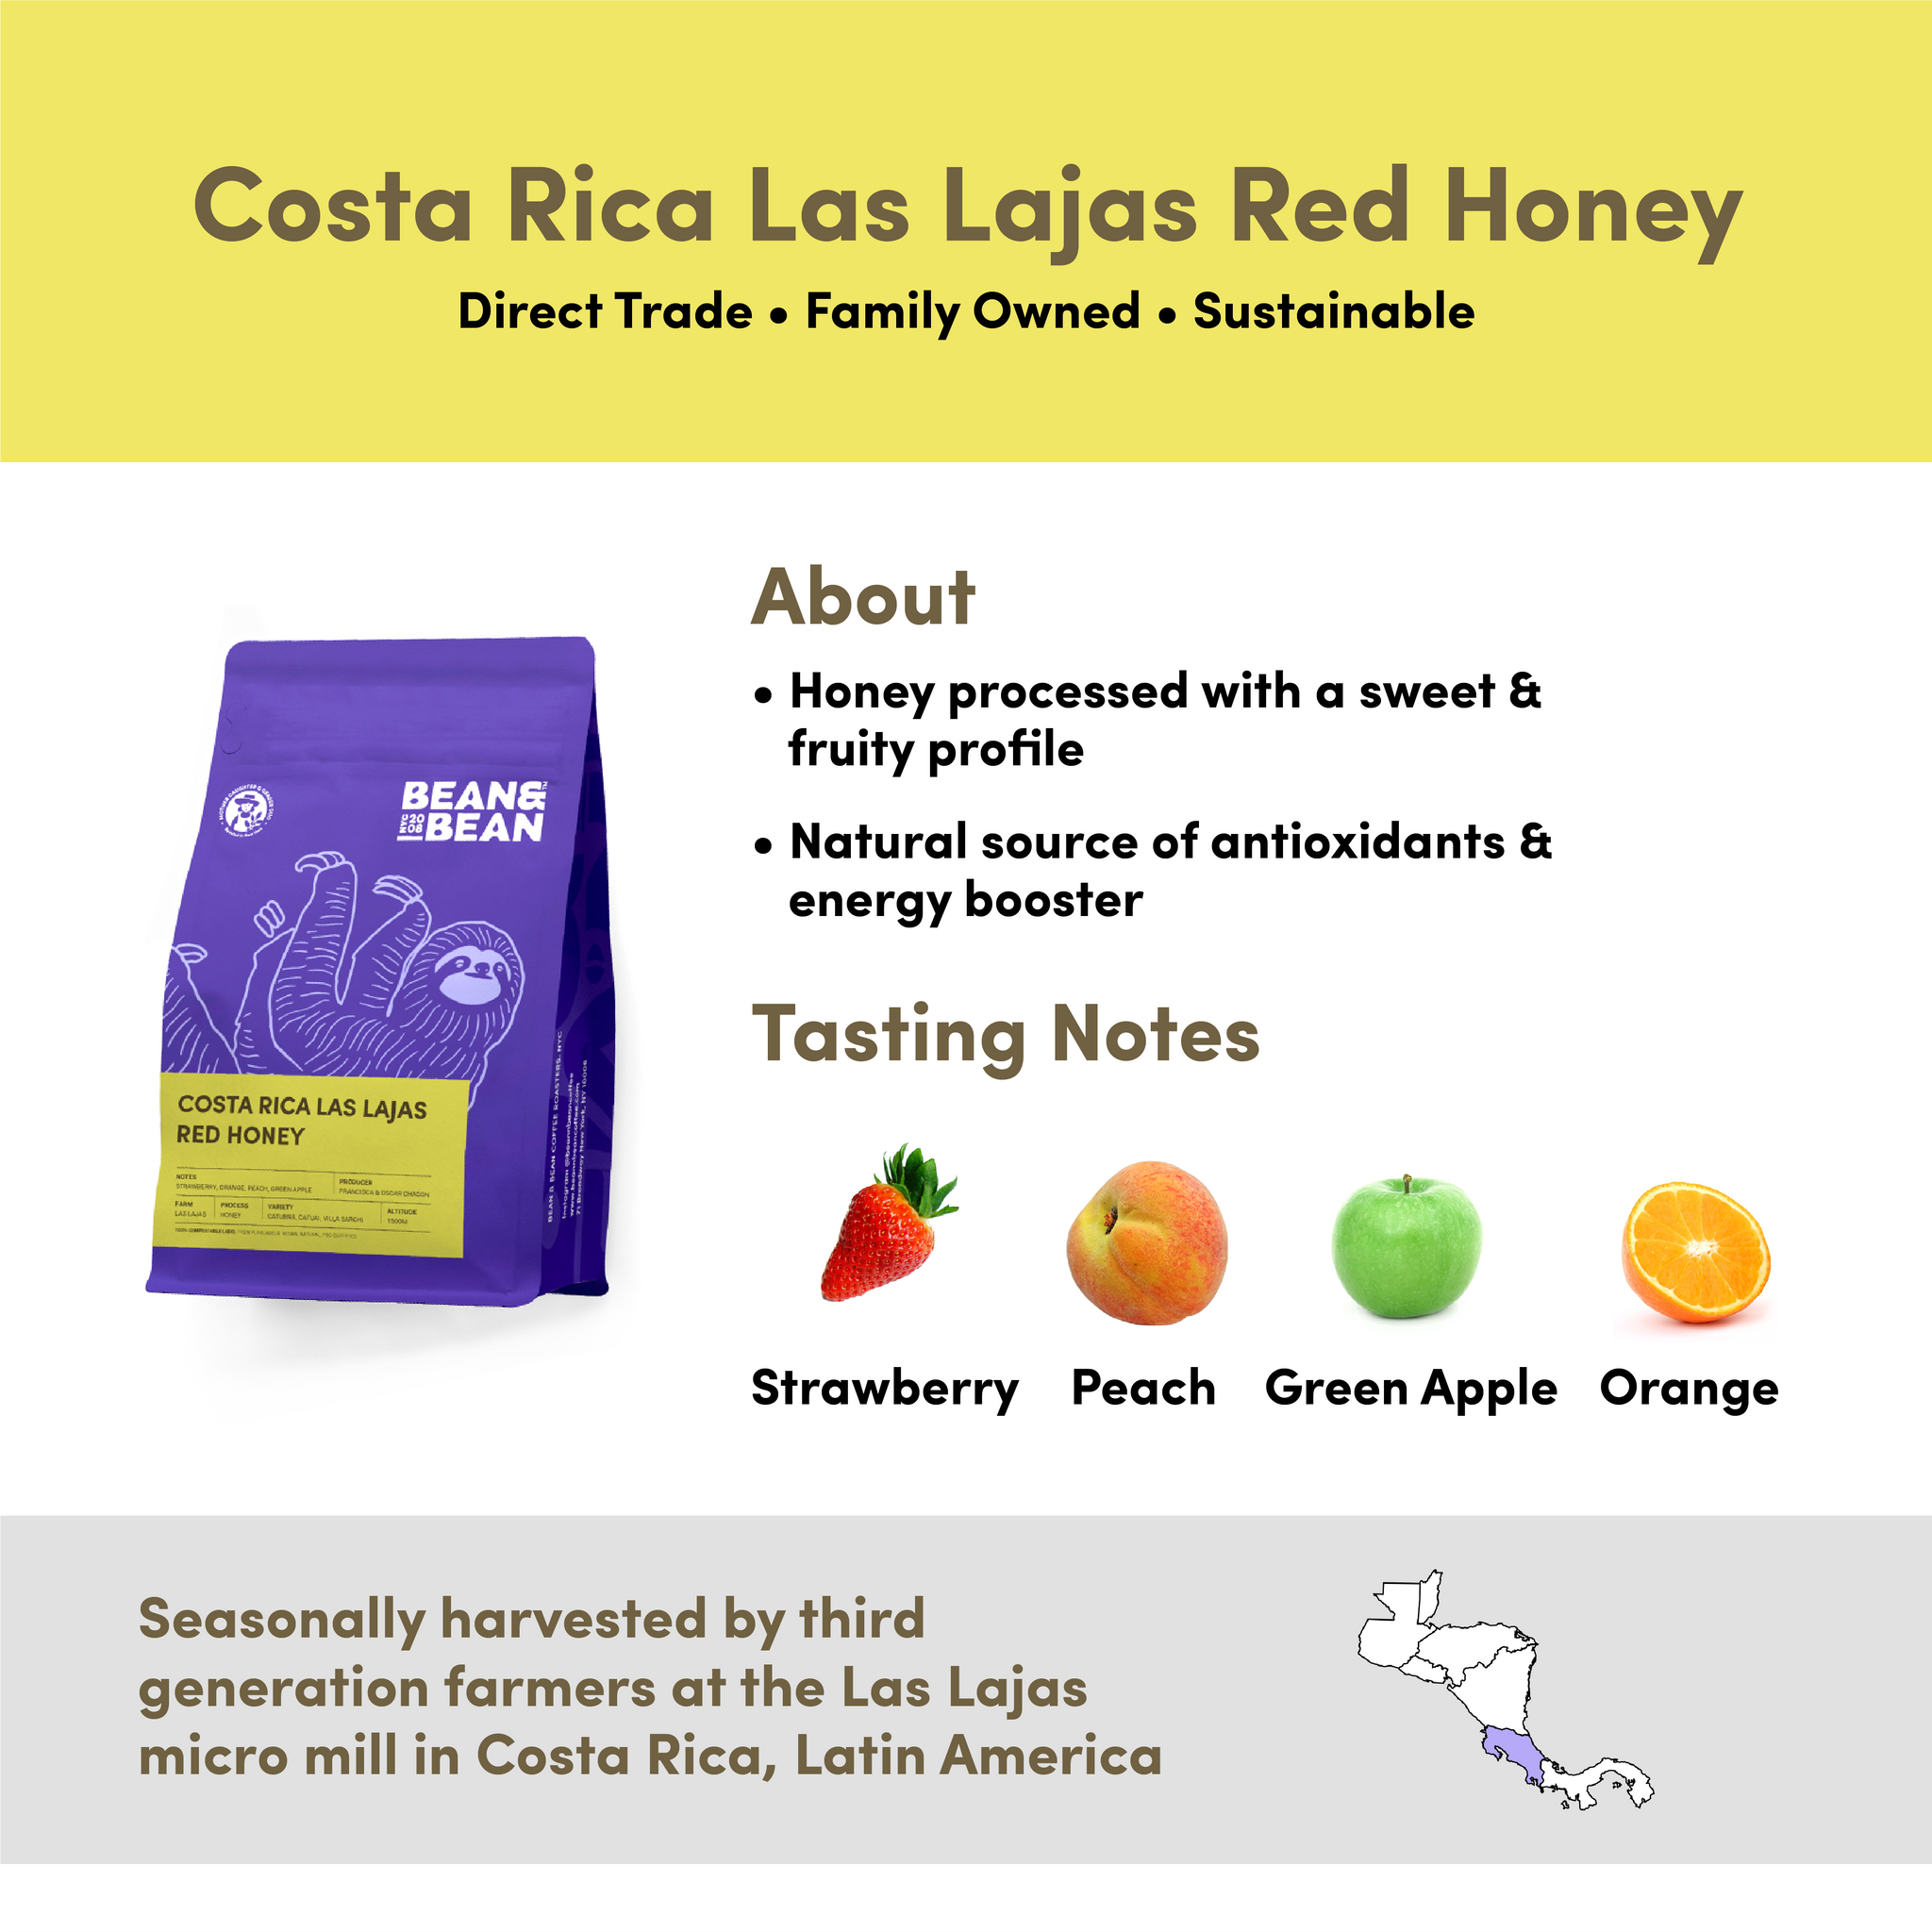 Costa Rica Las Lajas Red Honey